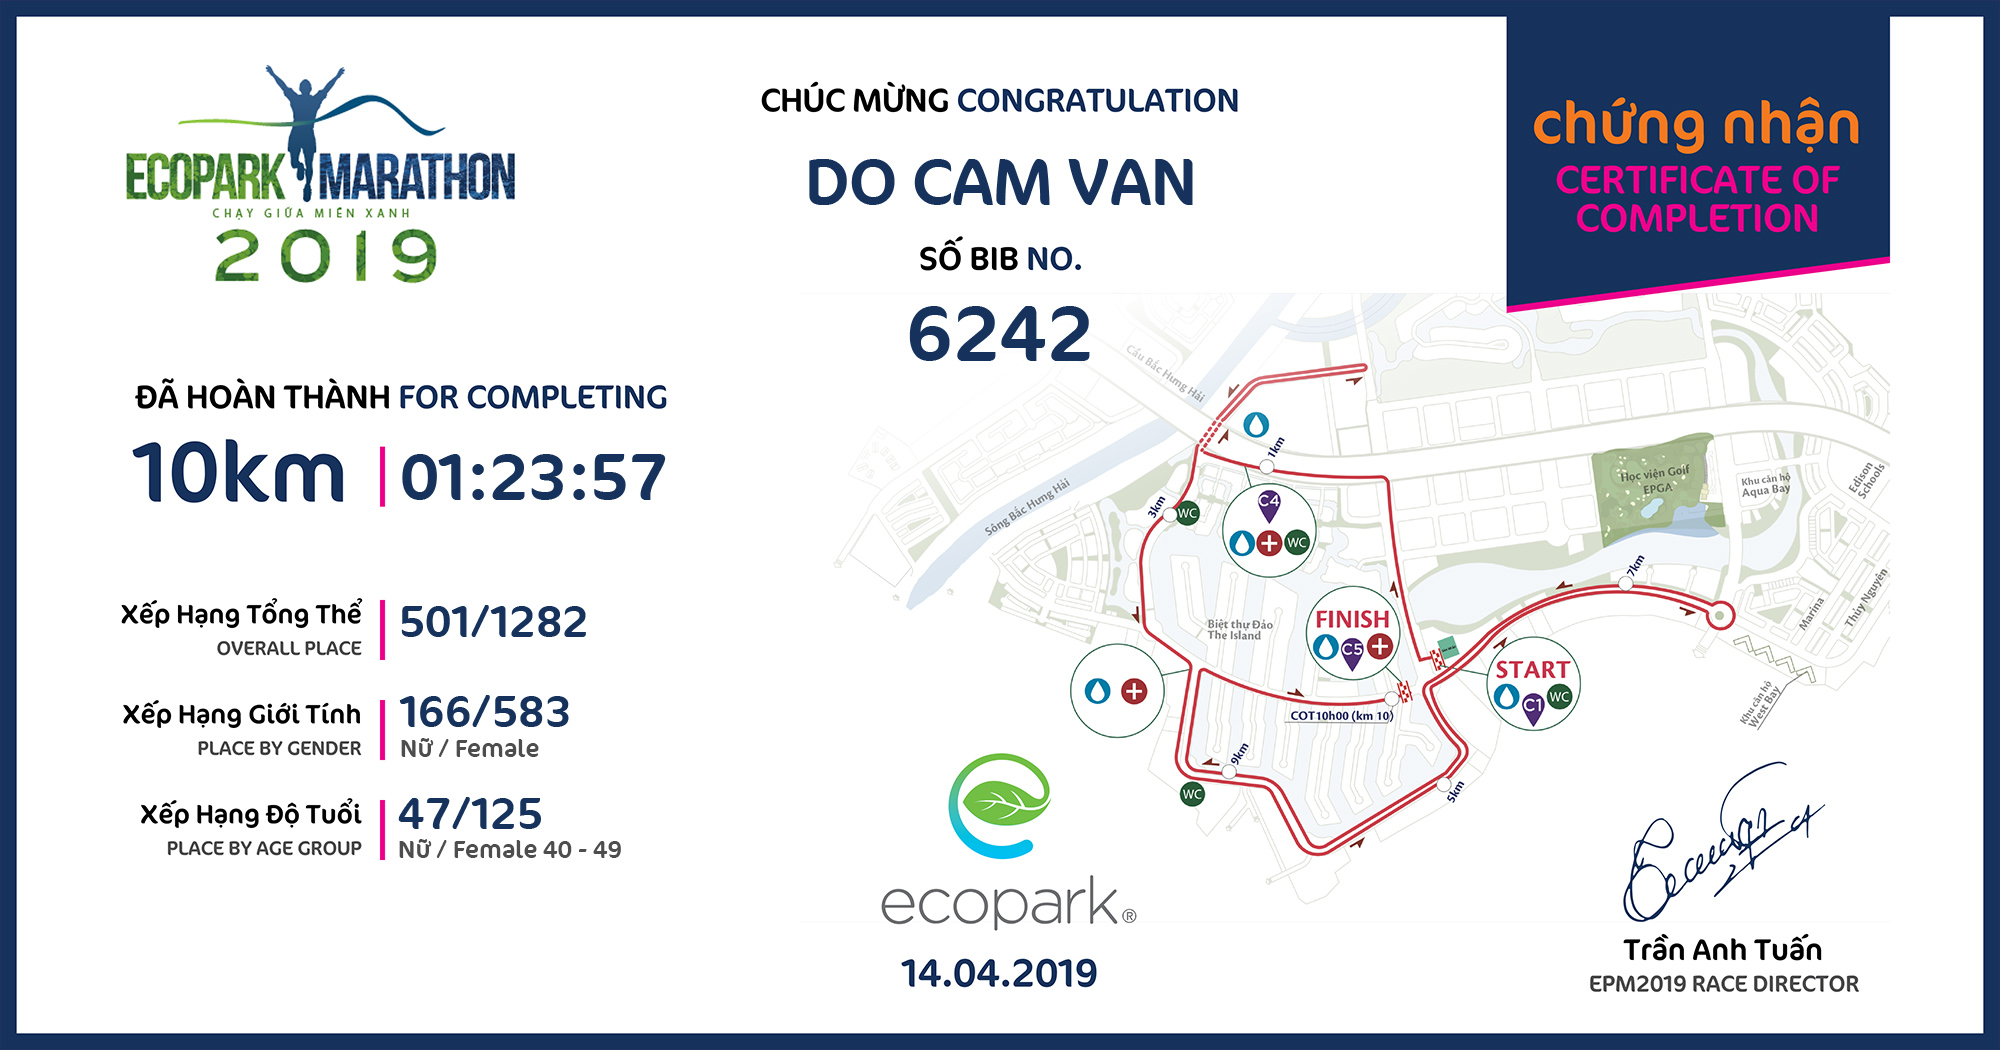 6242 - Do Cam Van